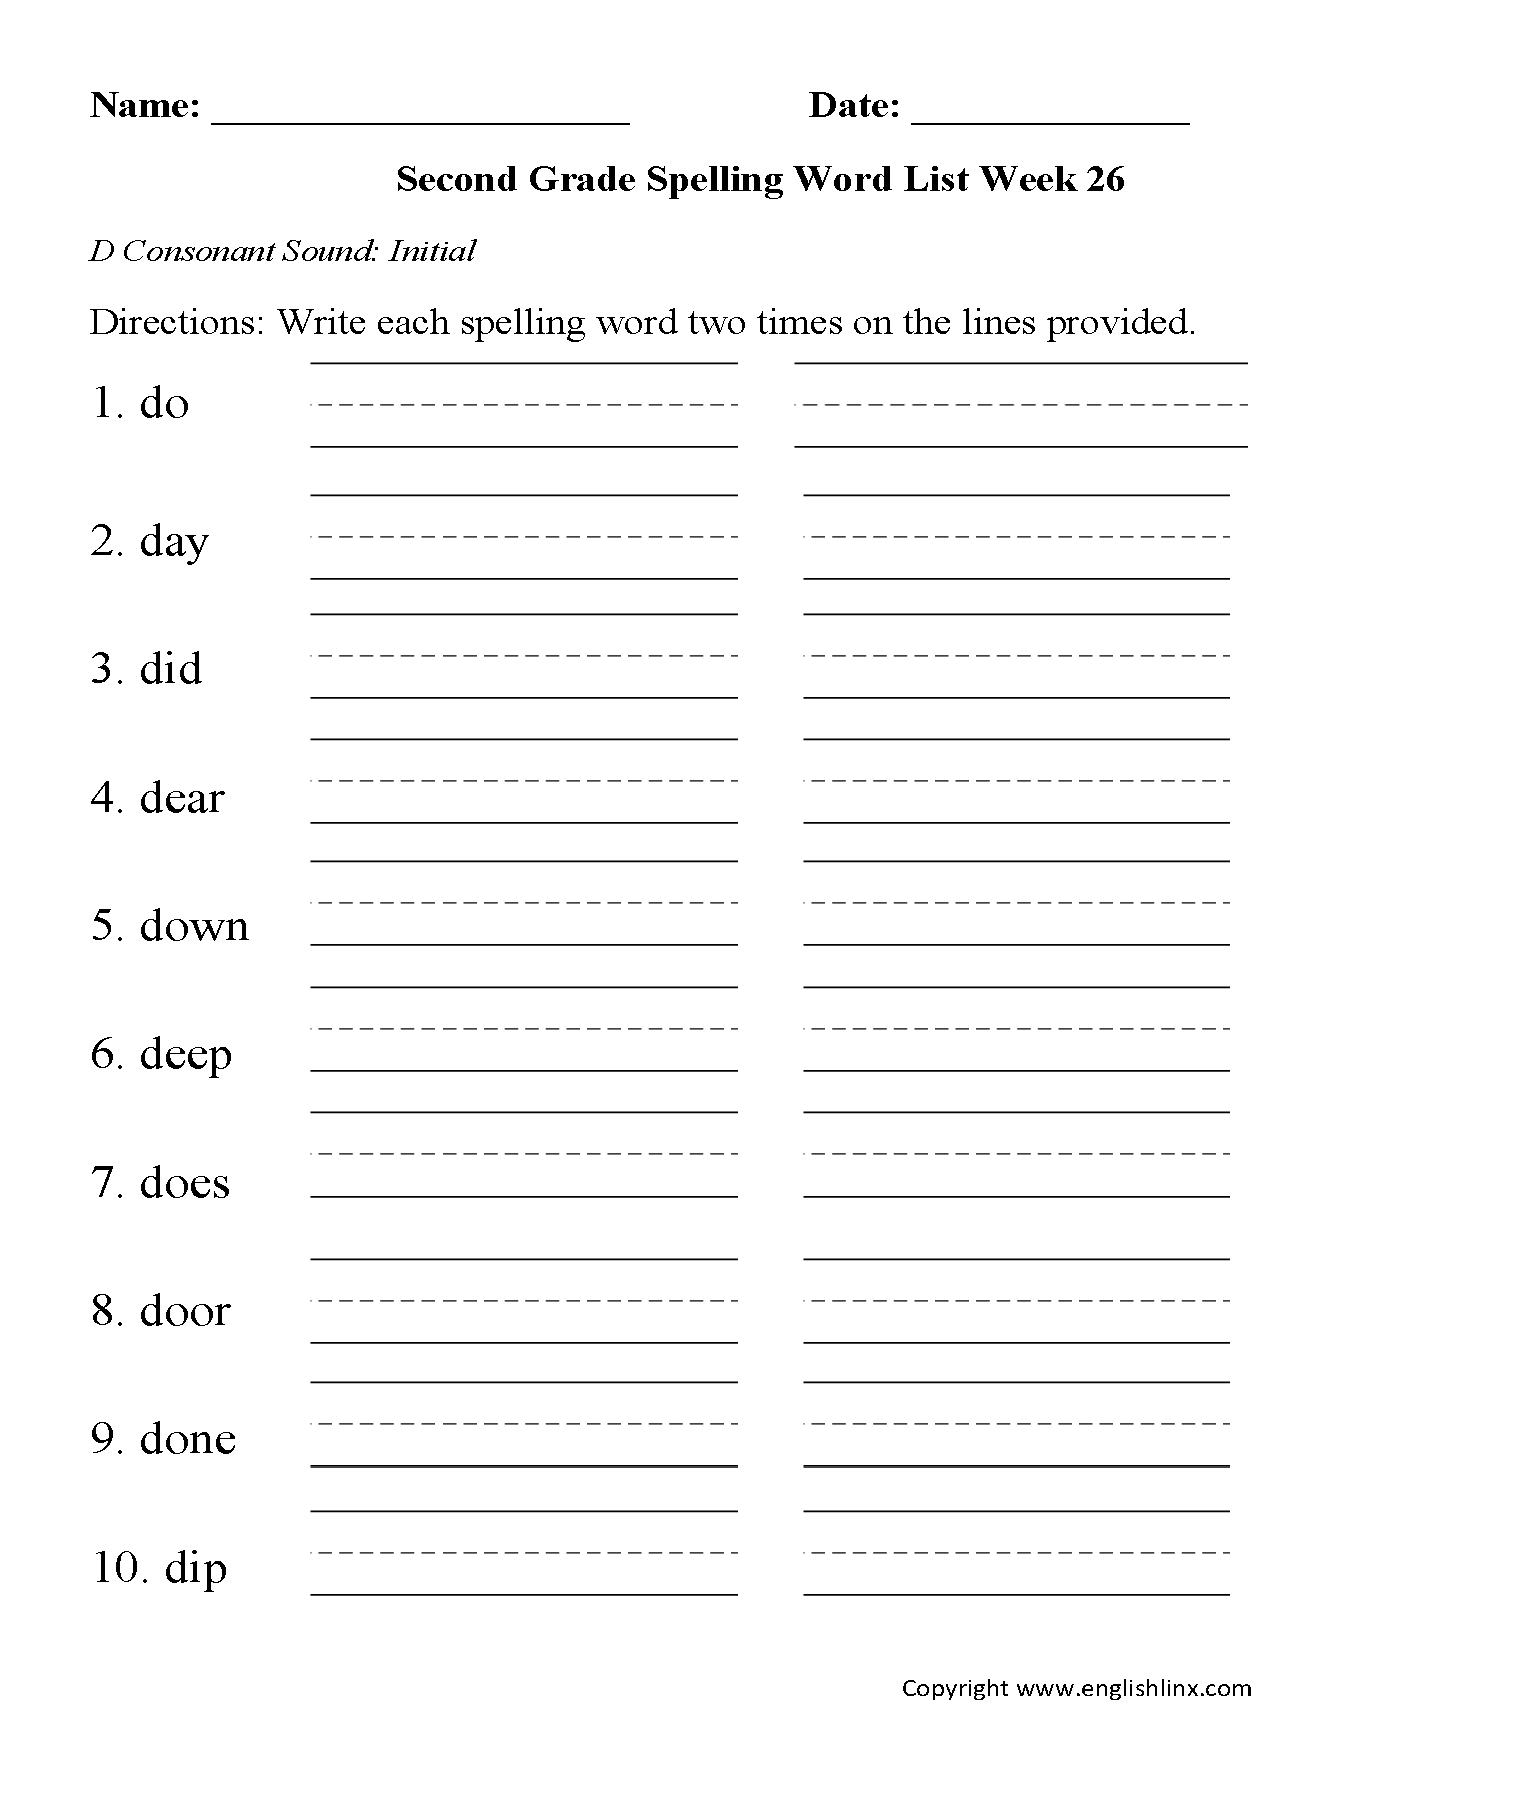 Week 26 D Consonant Initial Second Grade Spelling Words Worksheets